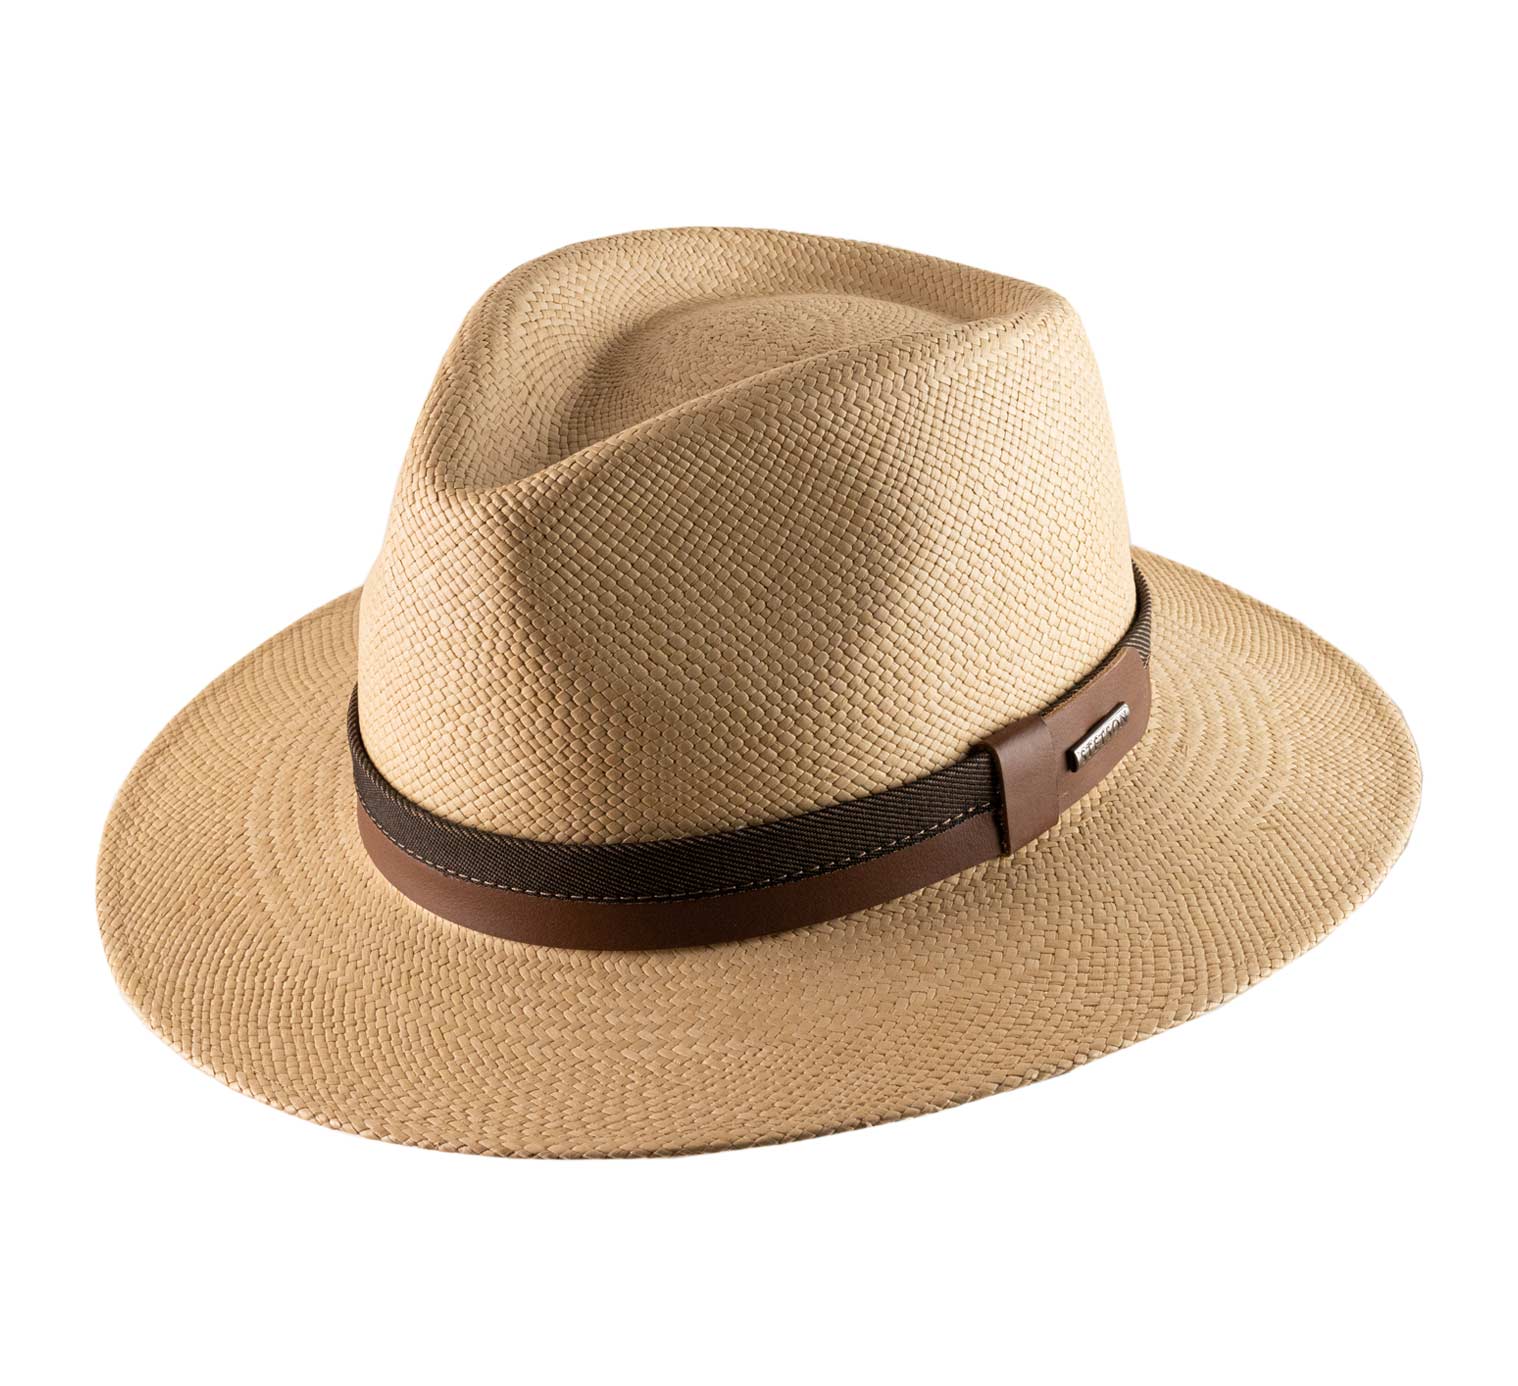 Chapeau Stetson en coton - achetez un chapeau Stetson d'été pour homme